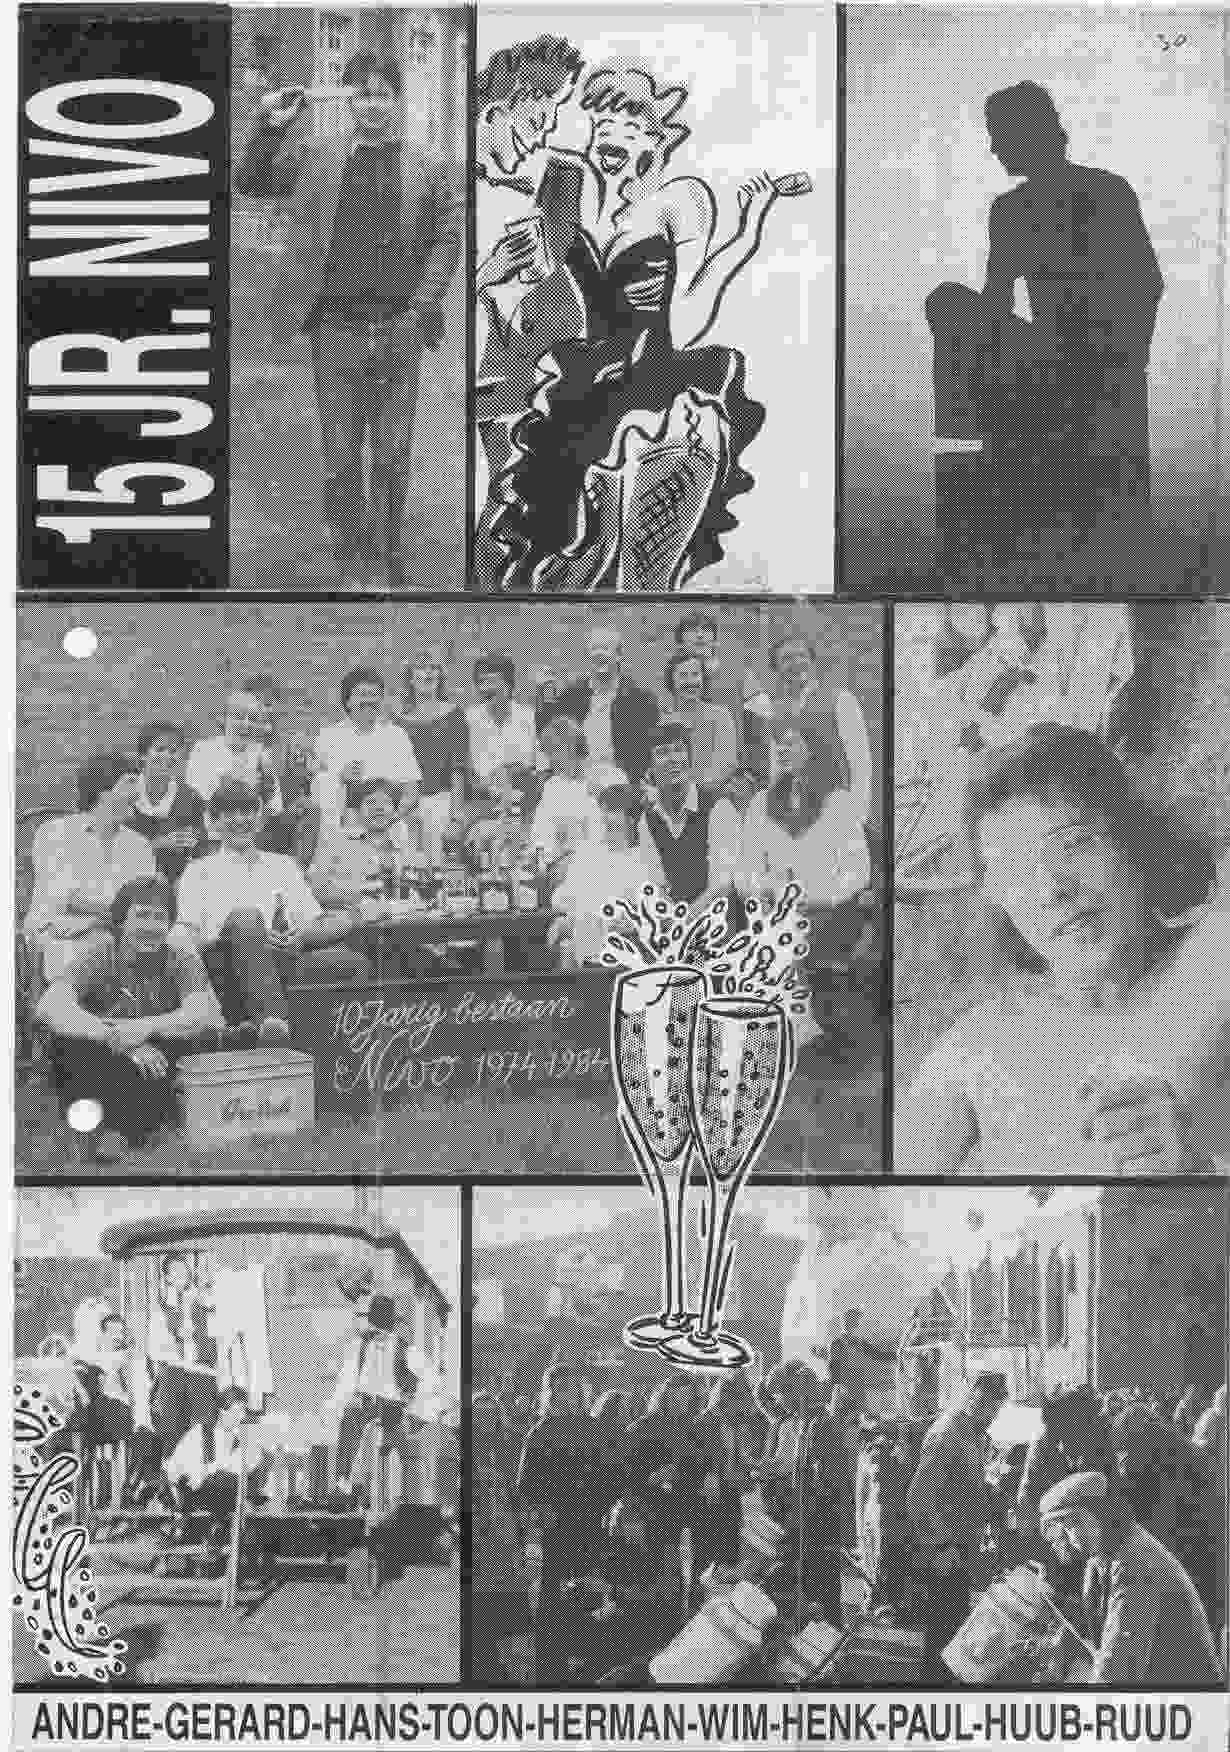 15-jarig jubileum van Nivo op 1989-10-14